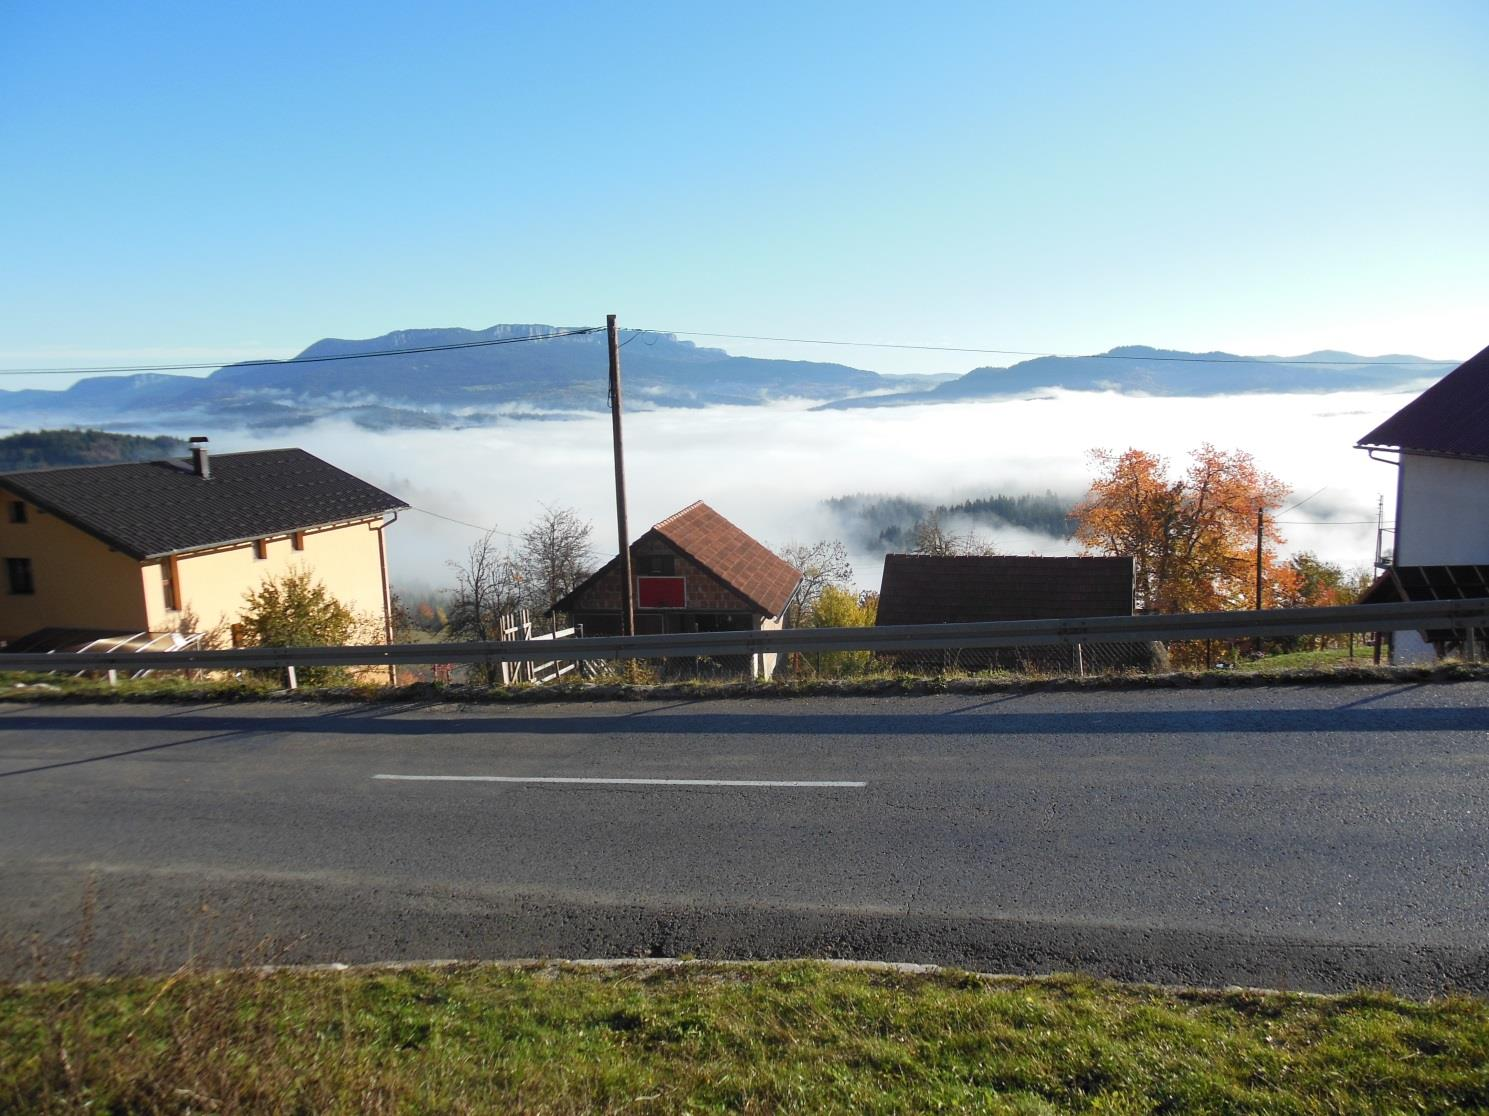 Εικόνα 5.4 Ομίχλη ακτινοβολίας σε κοιλάδα στη Μπάνια Λούκα (Βοσνία).